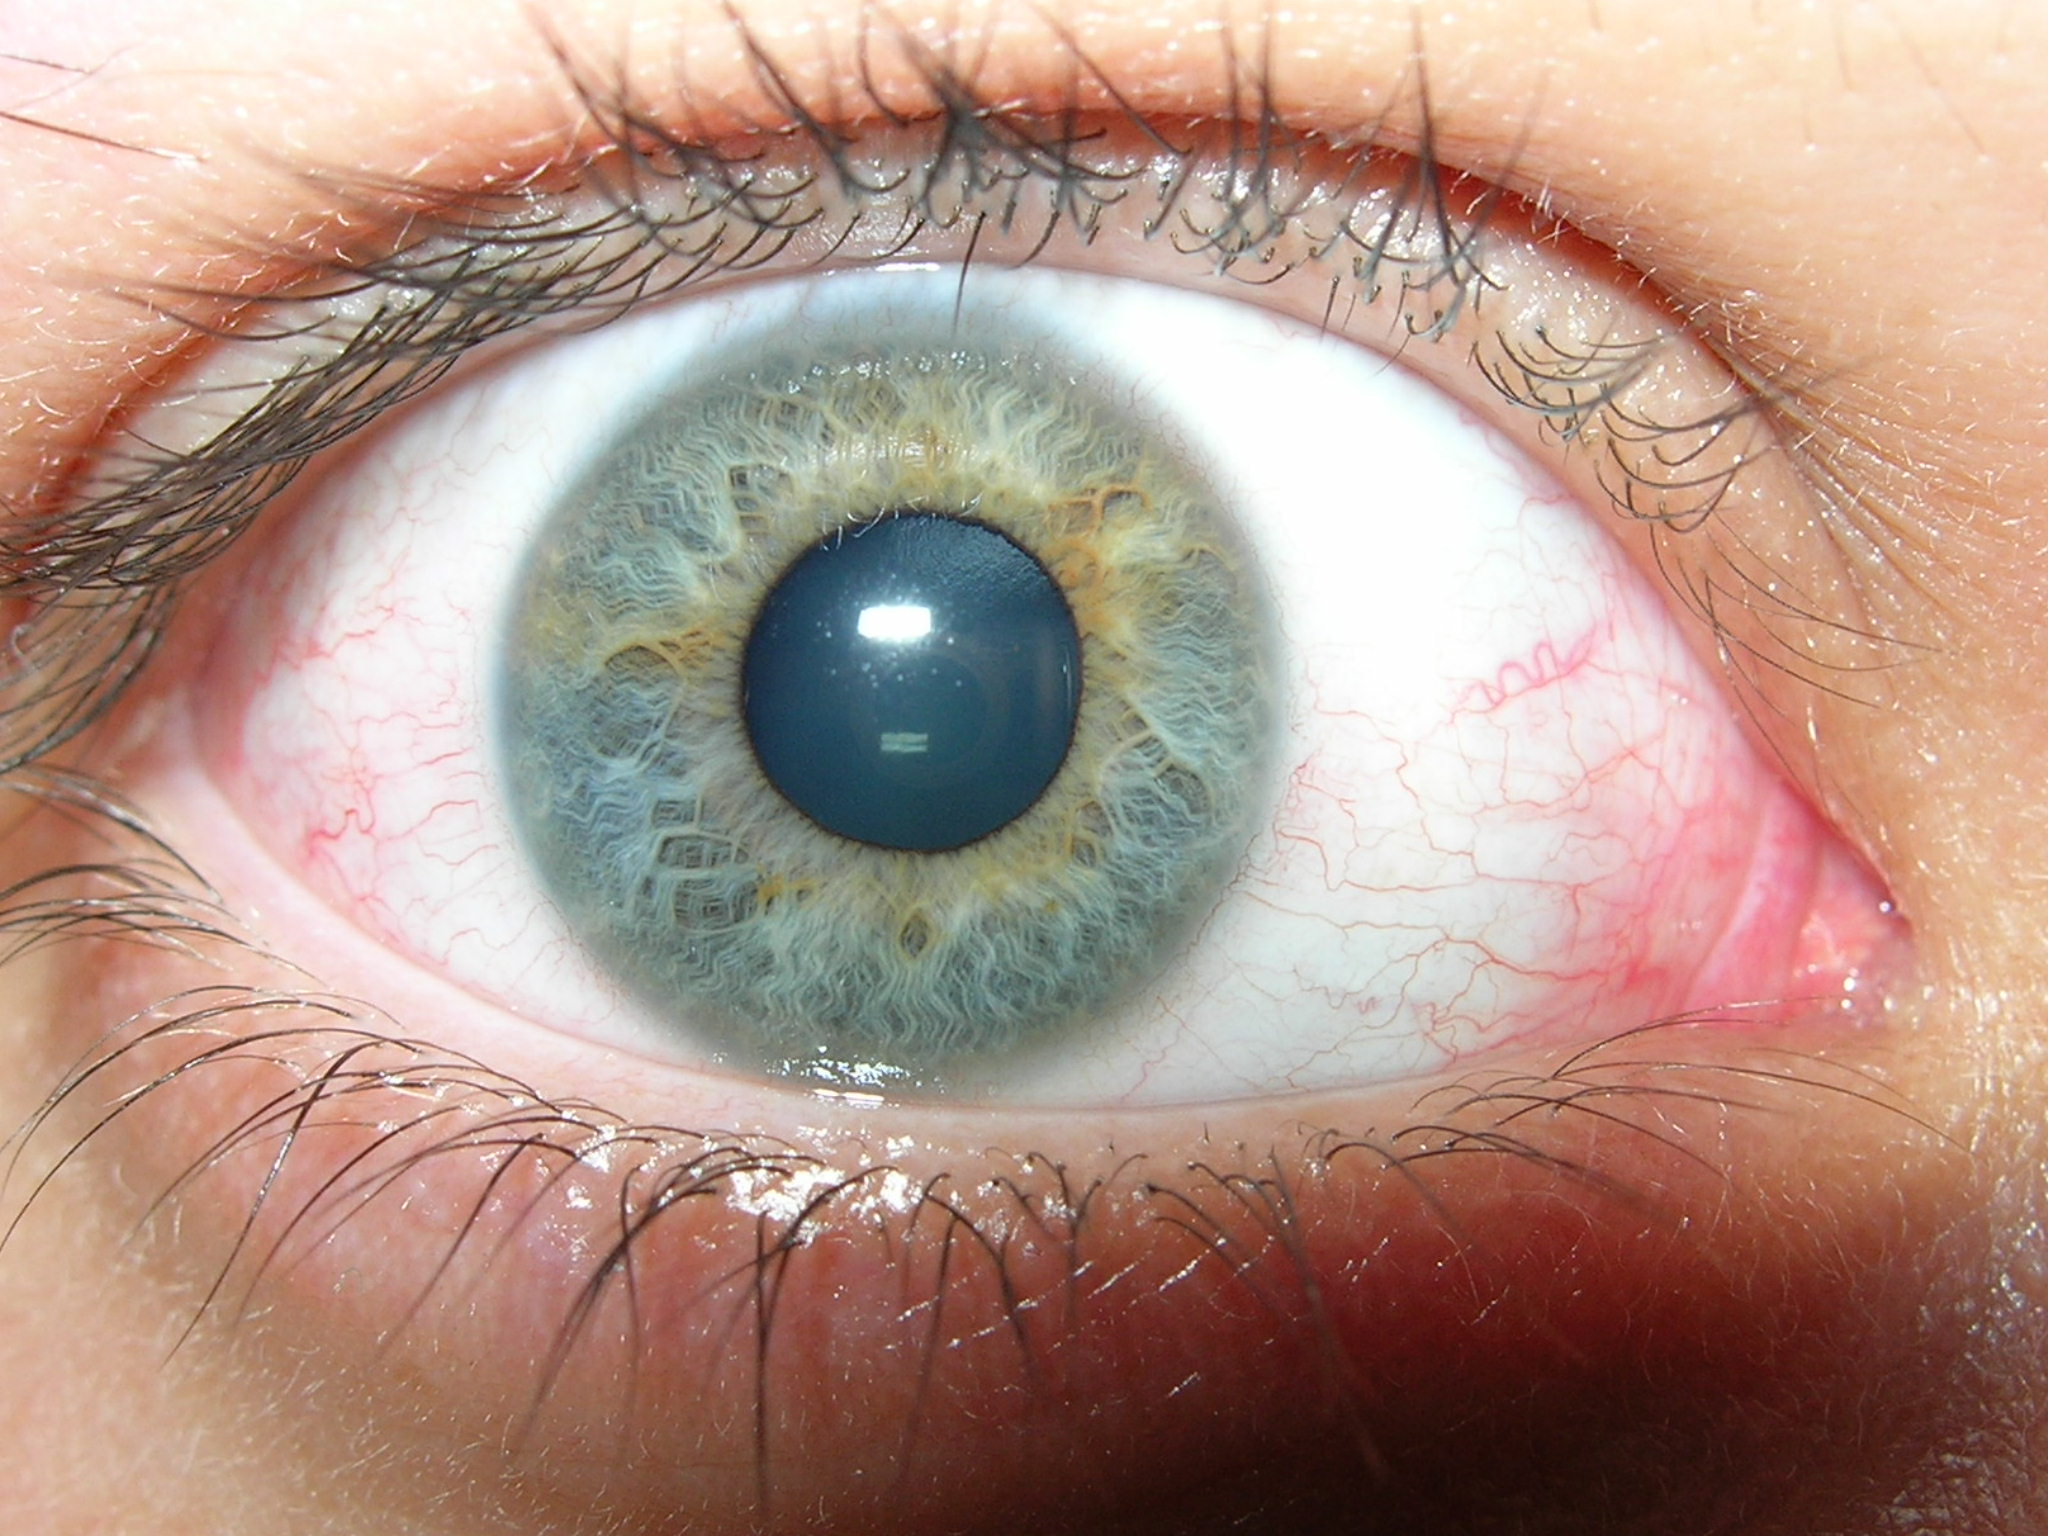 Gouttes oculaires pour le traitement des yeux secs ou fatigués